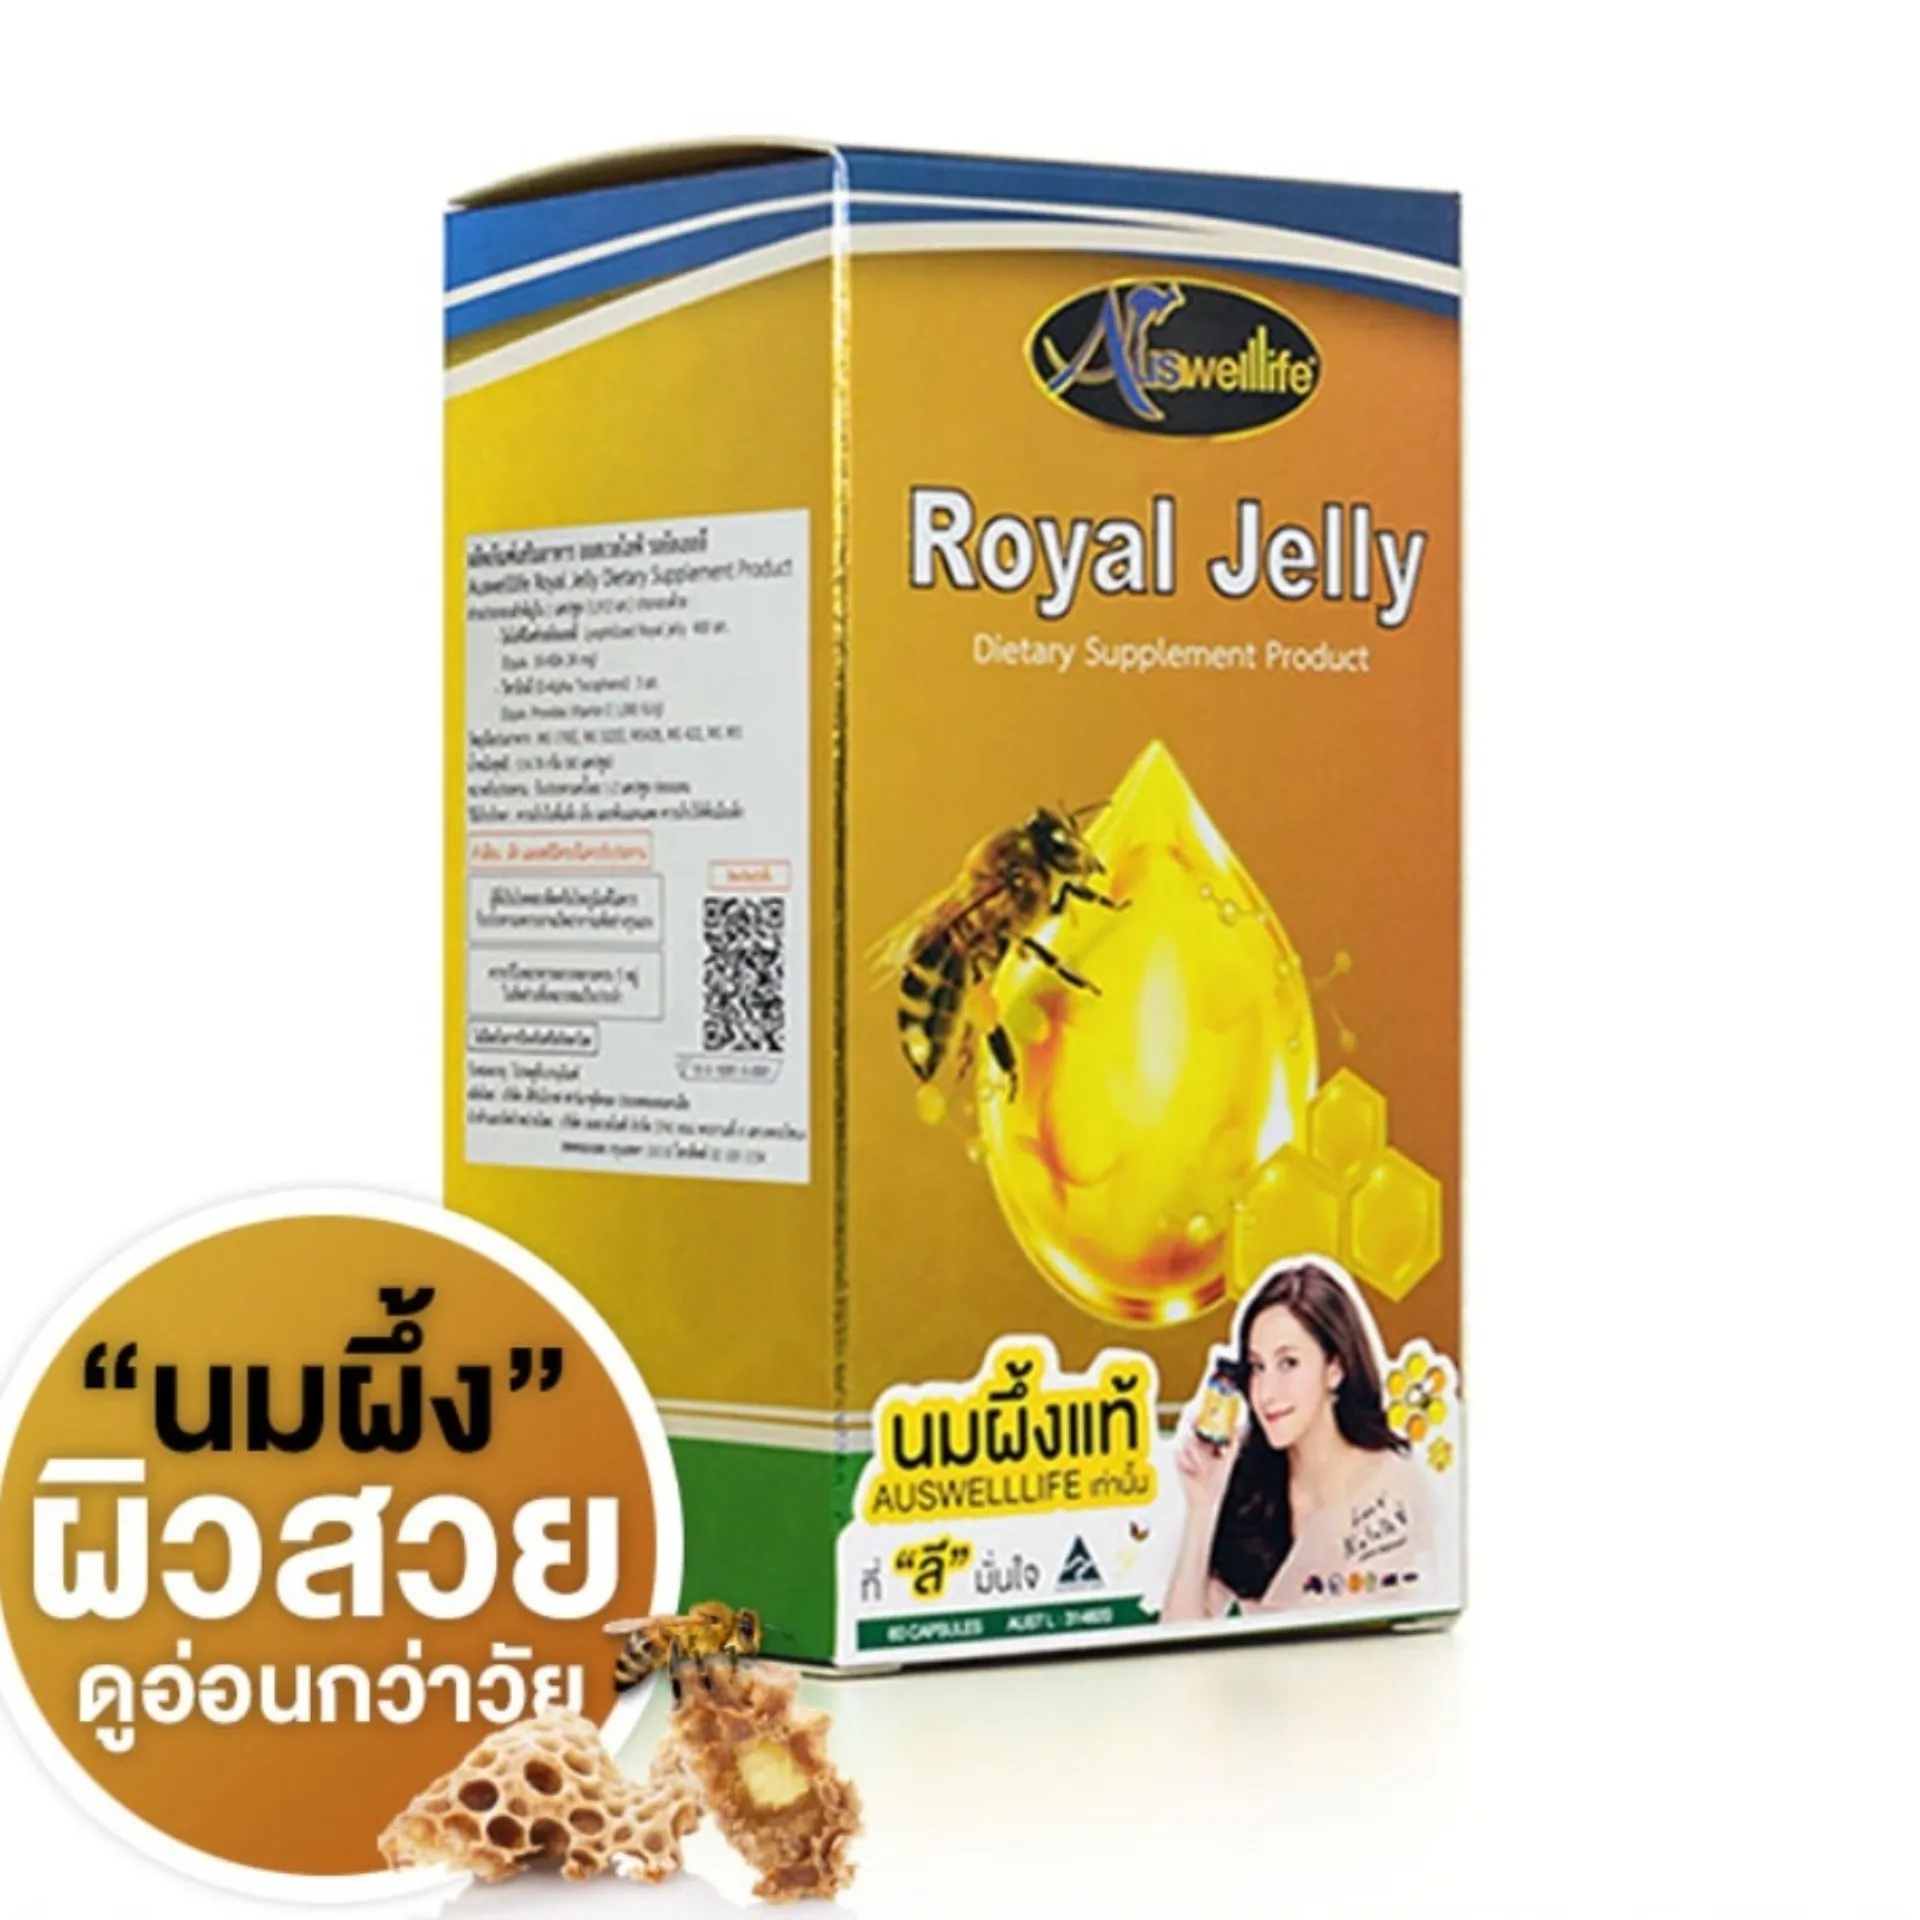 (ของแท้ 100%) นมผึ้ง Royal Jelly Auswelllife Royal Jelly นมผึ้งเกรดพรีเมี่ยม 100% อาหารเสริมเพื่อสุขภาพ บำรุงประสาทและสมอง ต้านความเครียด นอนไม่หลับ และความอ่อนเยาว์ ( 1 กระปุก  60 แคปซูล ) * Ausway Healthway